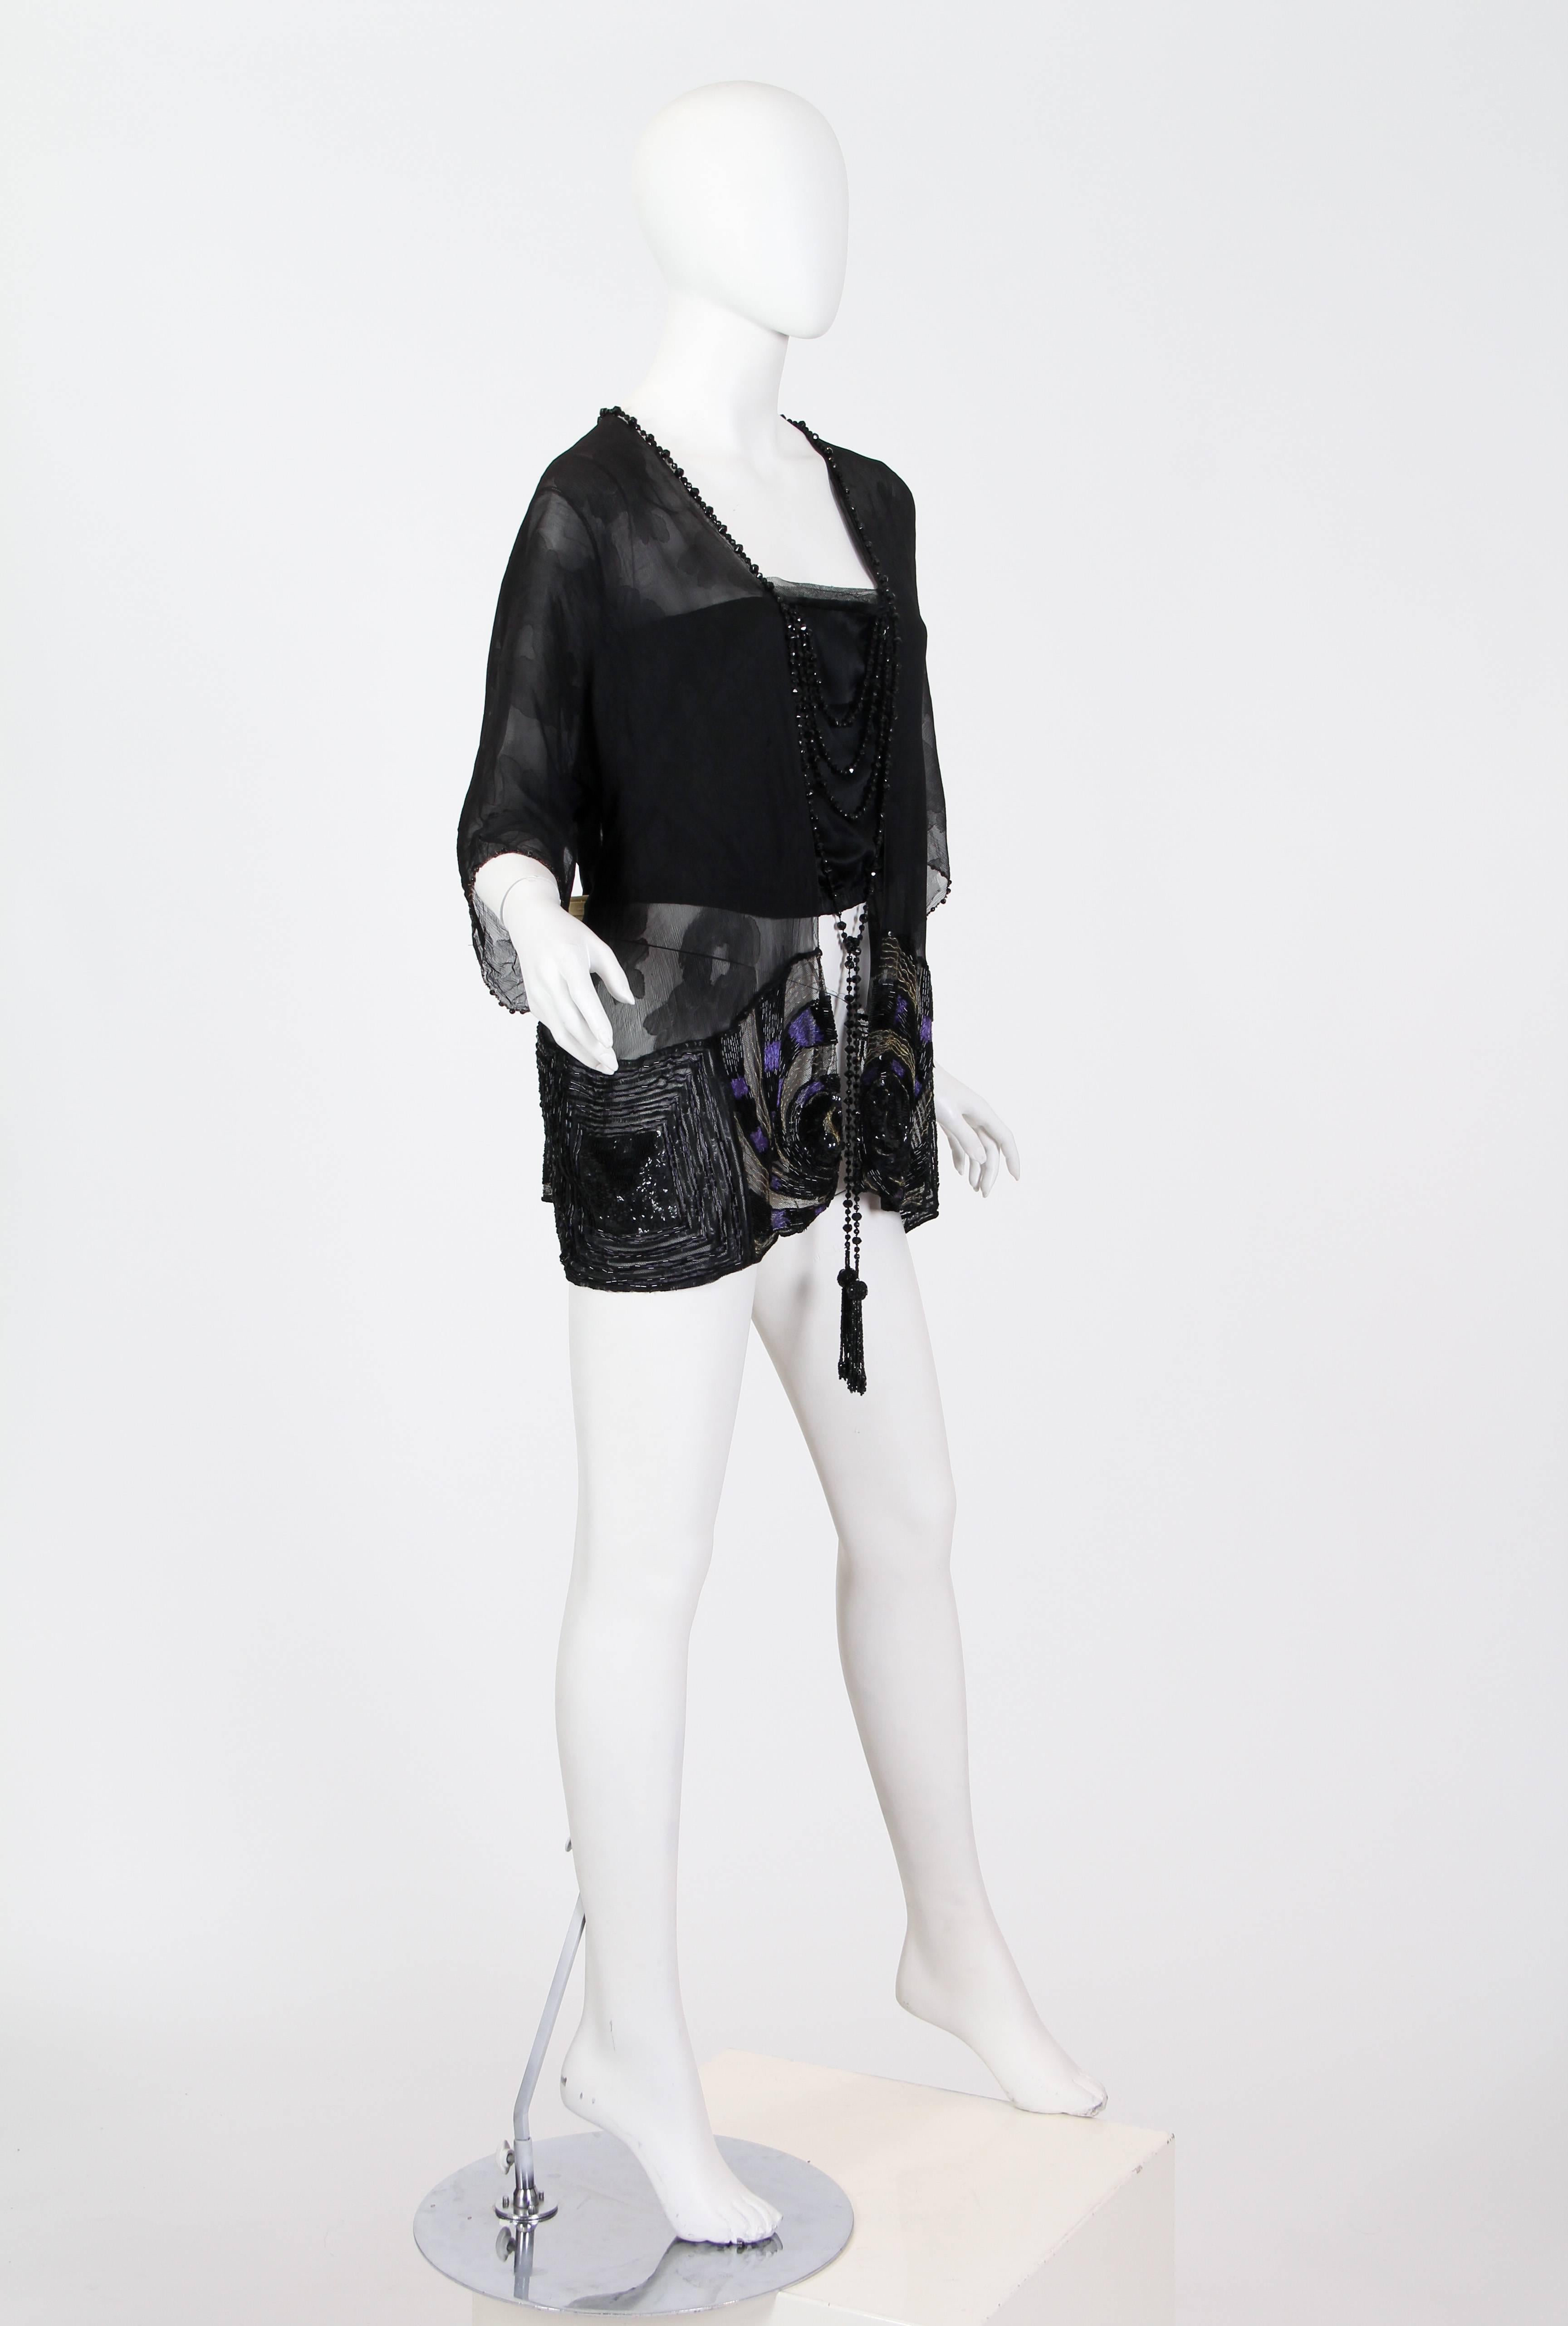 Edwardianische Kimono-Bluse aus schwarzer Seide mit Kimonoärmeln, asiatischem Blumenmuster, metallischer Spitze und Perlenquasten